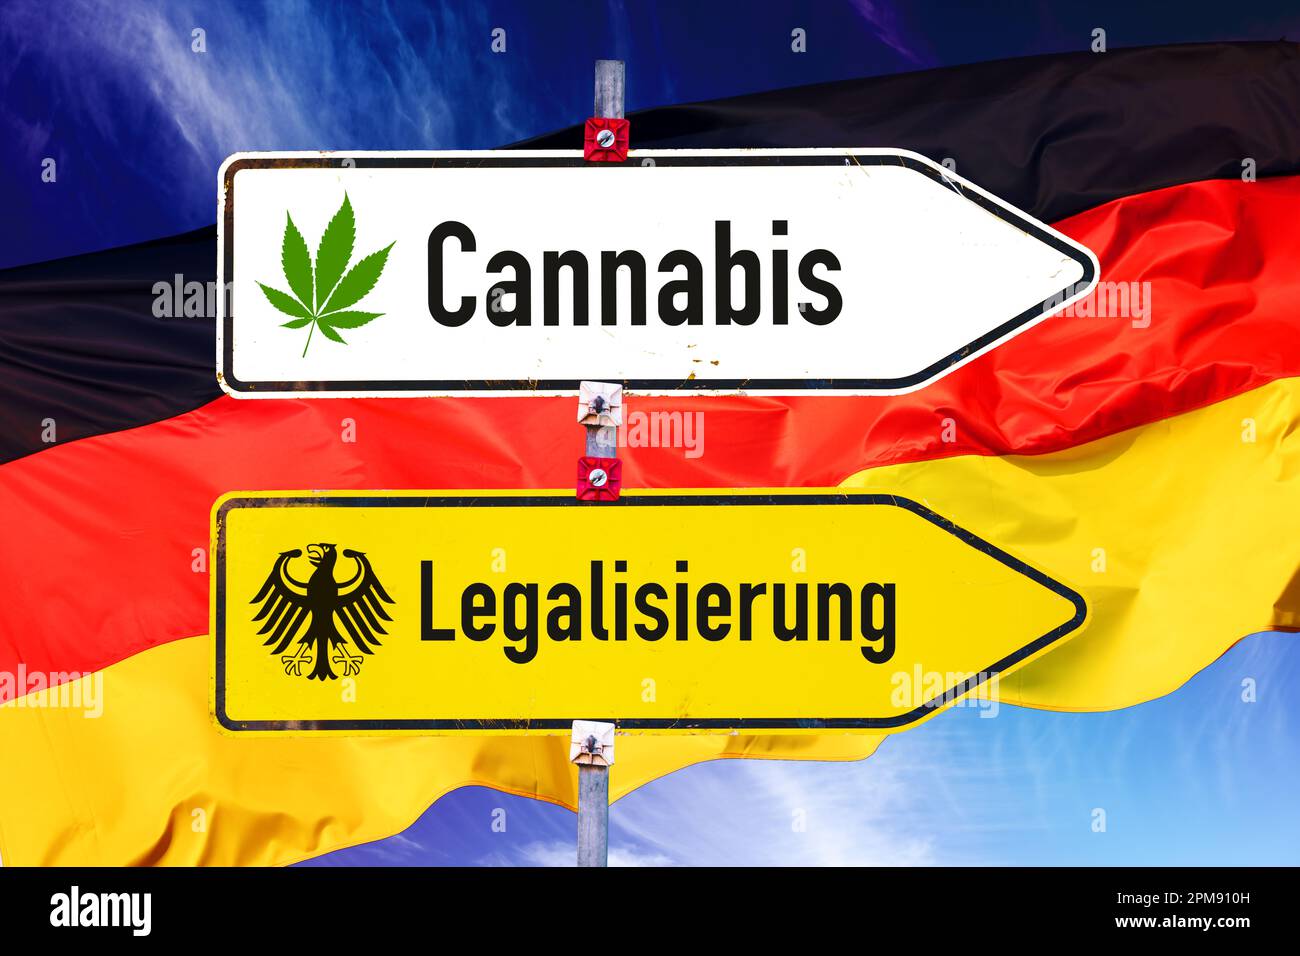 https://c8.alamy.com/comp/2PM910H/fotomontage-wegweiser-cannabis-und-legalisierung-mit-deutschlandfahne-2PM910H.jpg